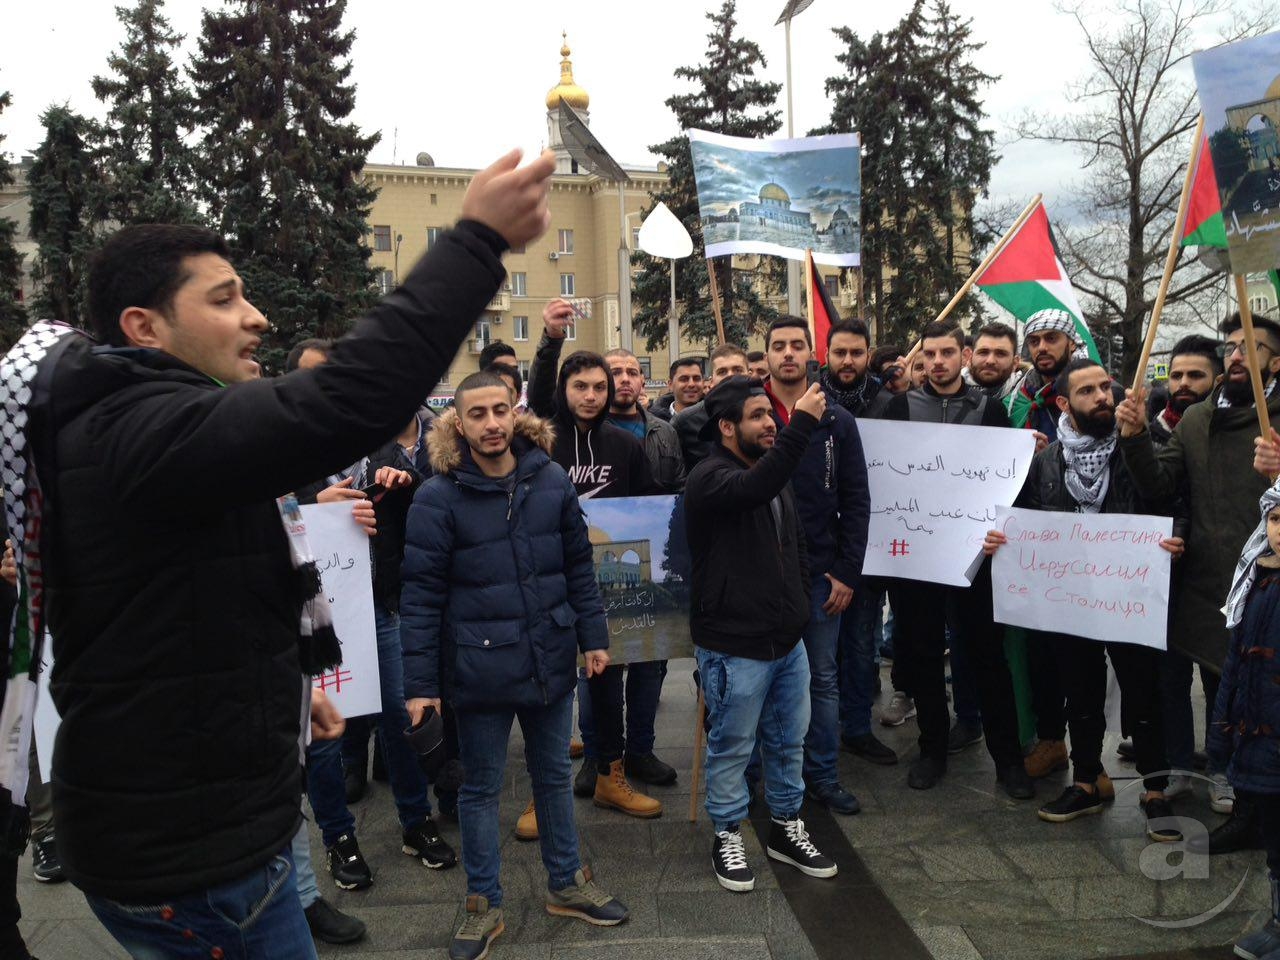 Палестинцы, которые выступают против решения президента США Дональда Трампа о признании Иерусалима столицей Израиля, вышли на акцию протеста на площади Конституции в Харькове в воскресенье, 10 декабря. 